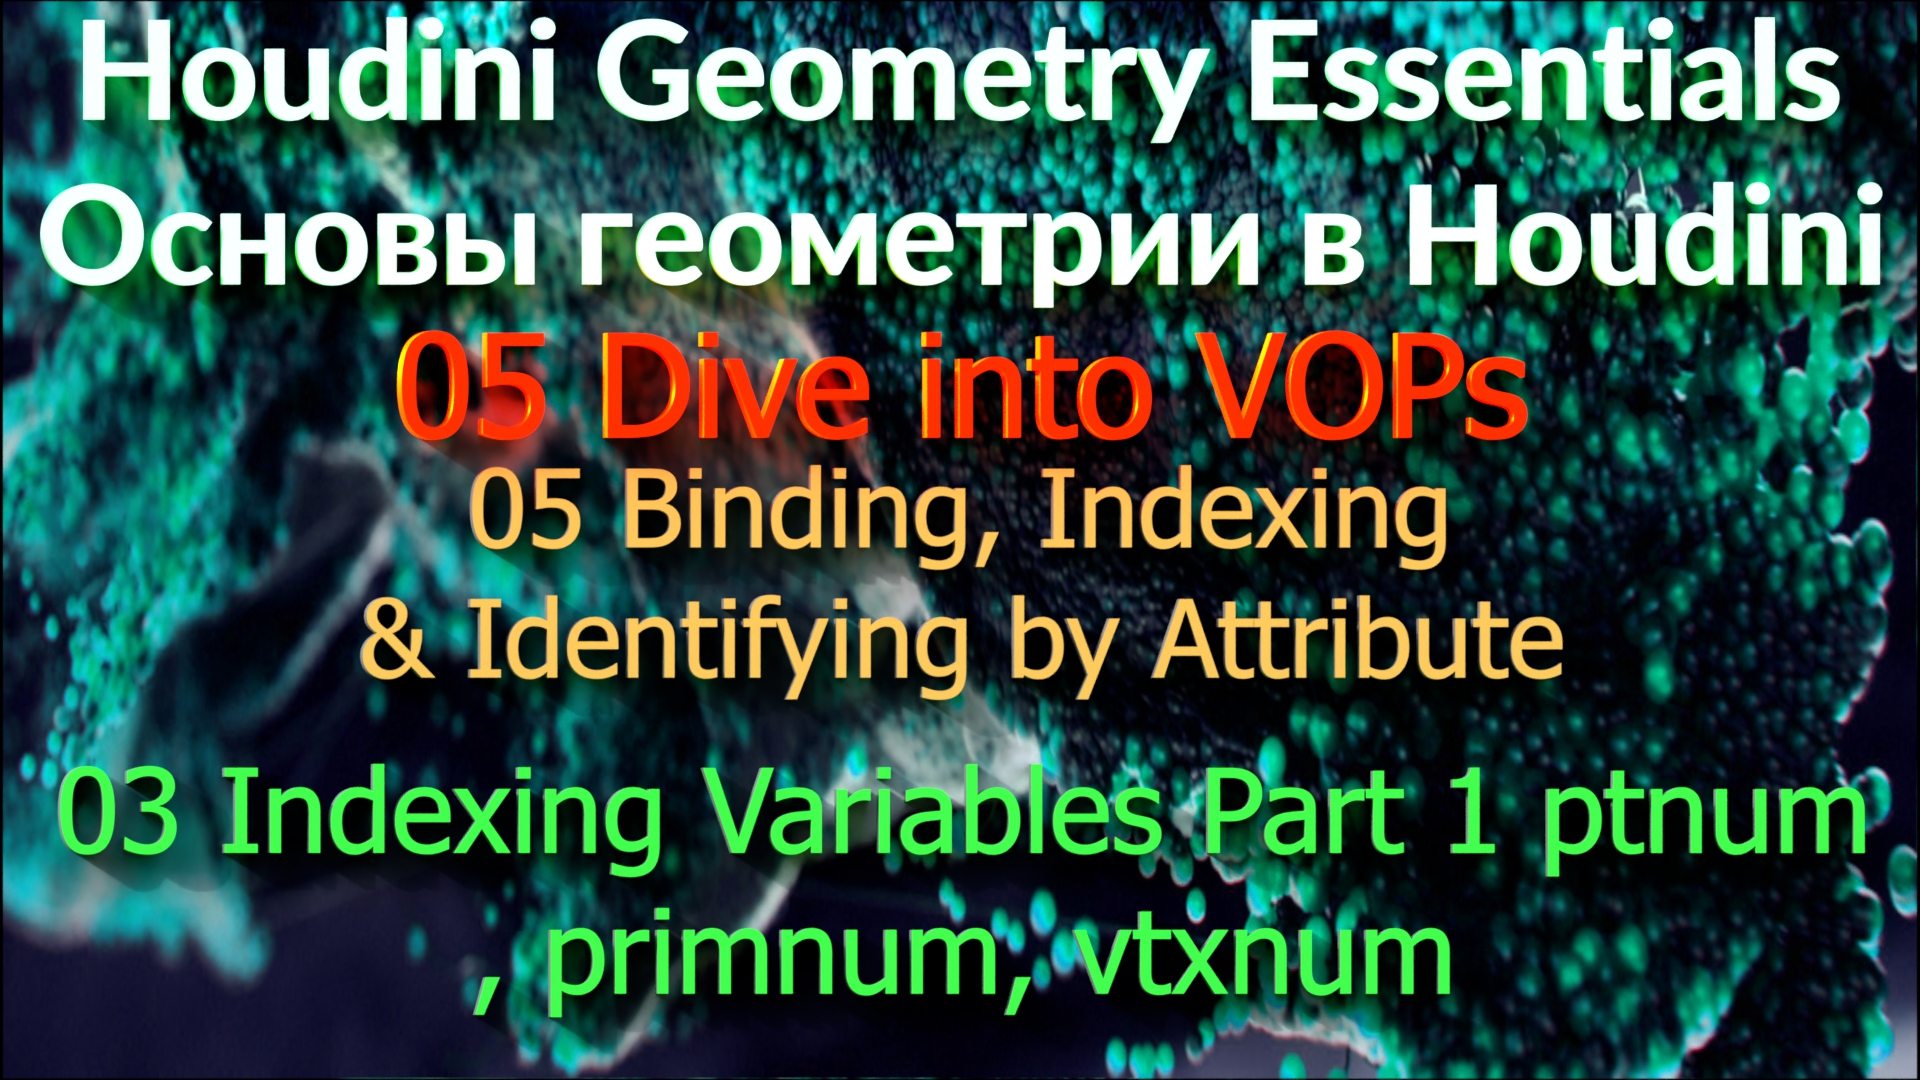 05_05_03 Indexing Variables Part 1 ptnum, primnum, vtxnum